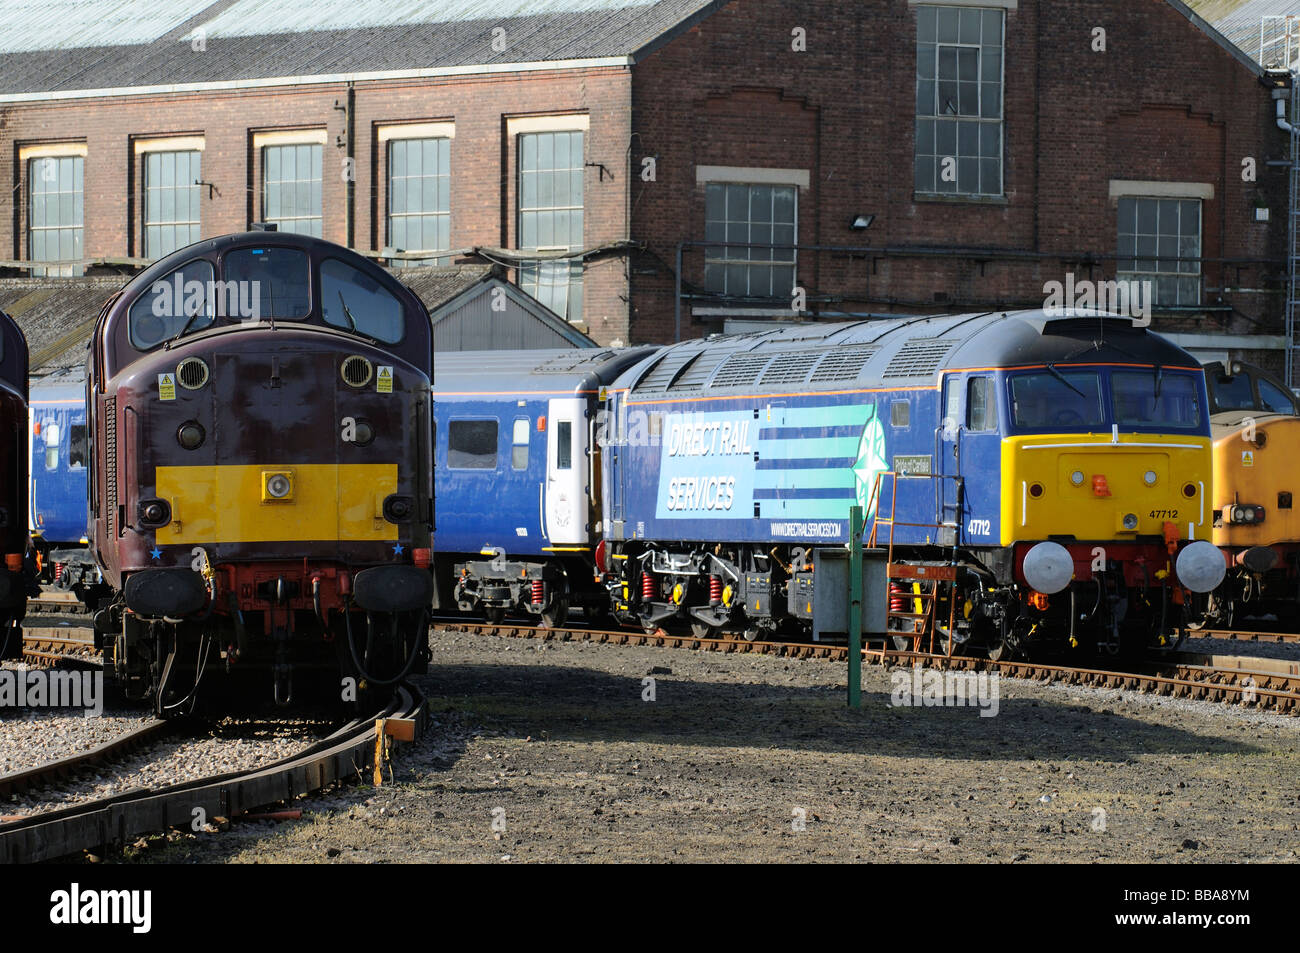 Services ferroviaires directes de fierté locomotive classe 47 Carlisle une loco vu à Eastleigh Hampshire Angleterre Banque D'Images